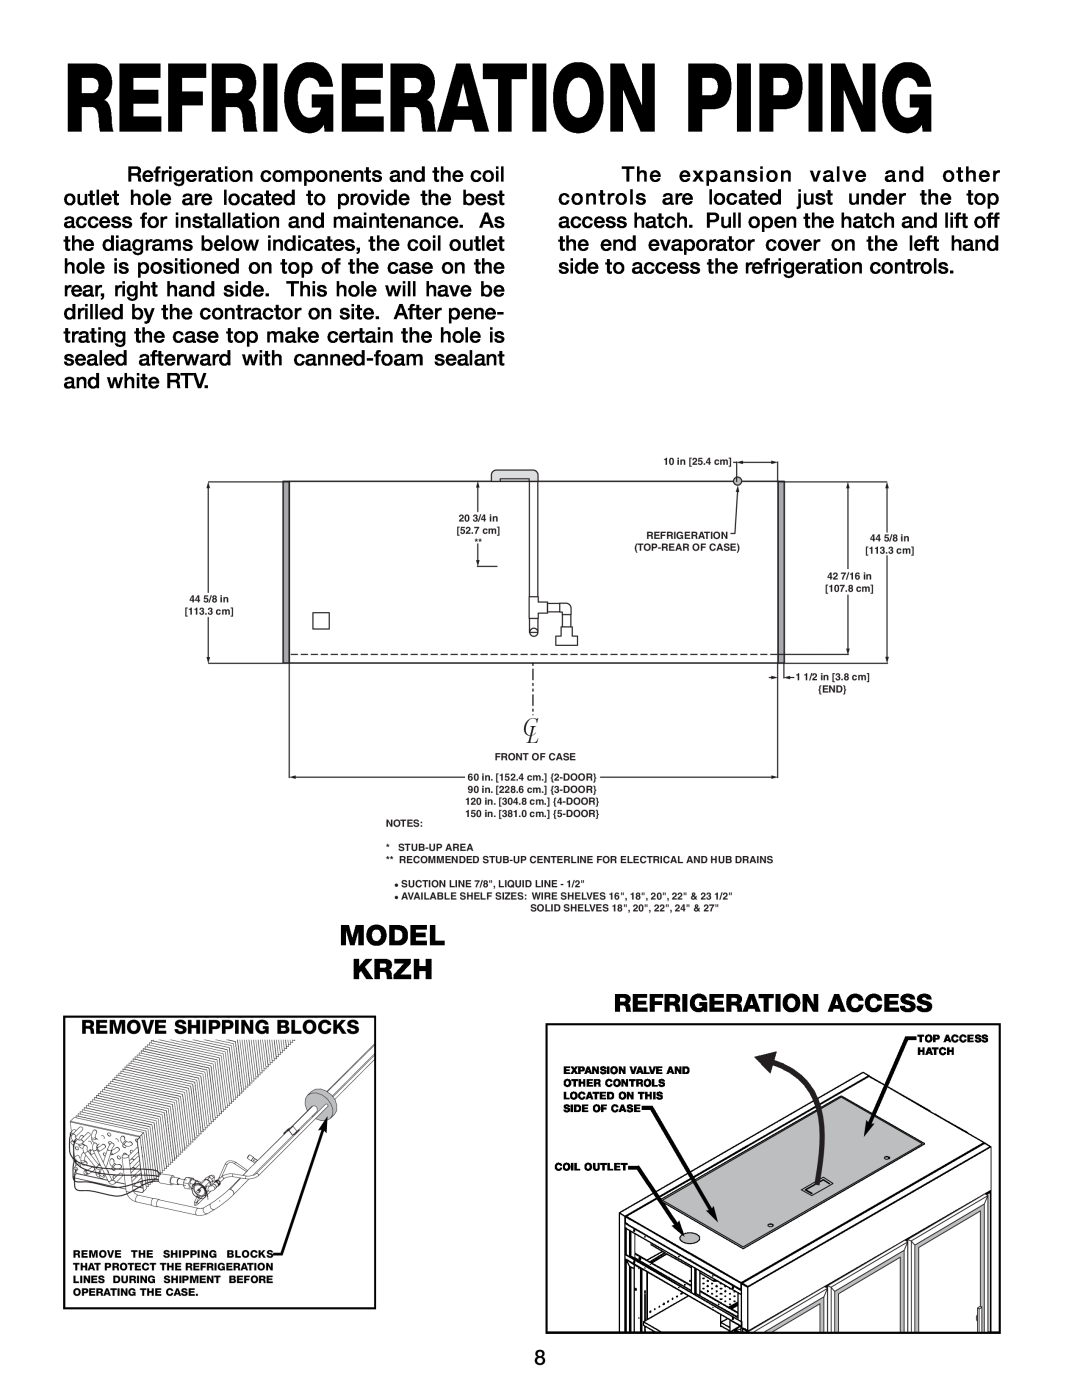 Hill Phoenix KRZH manual Refrigeration Piping, Model Krzh, Refrigeration Access 